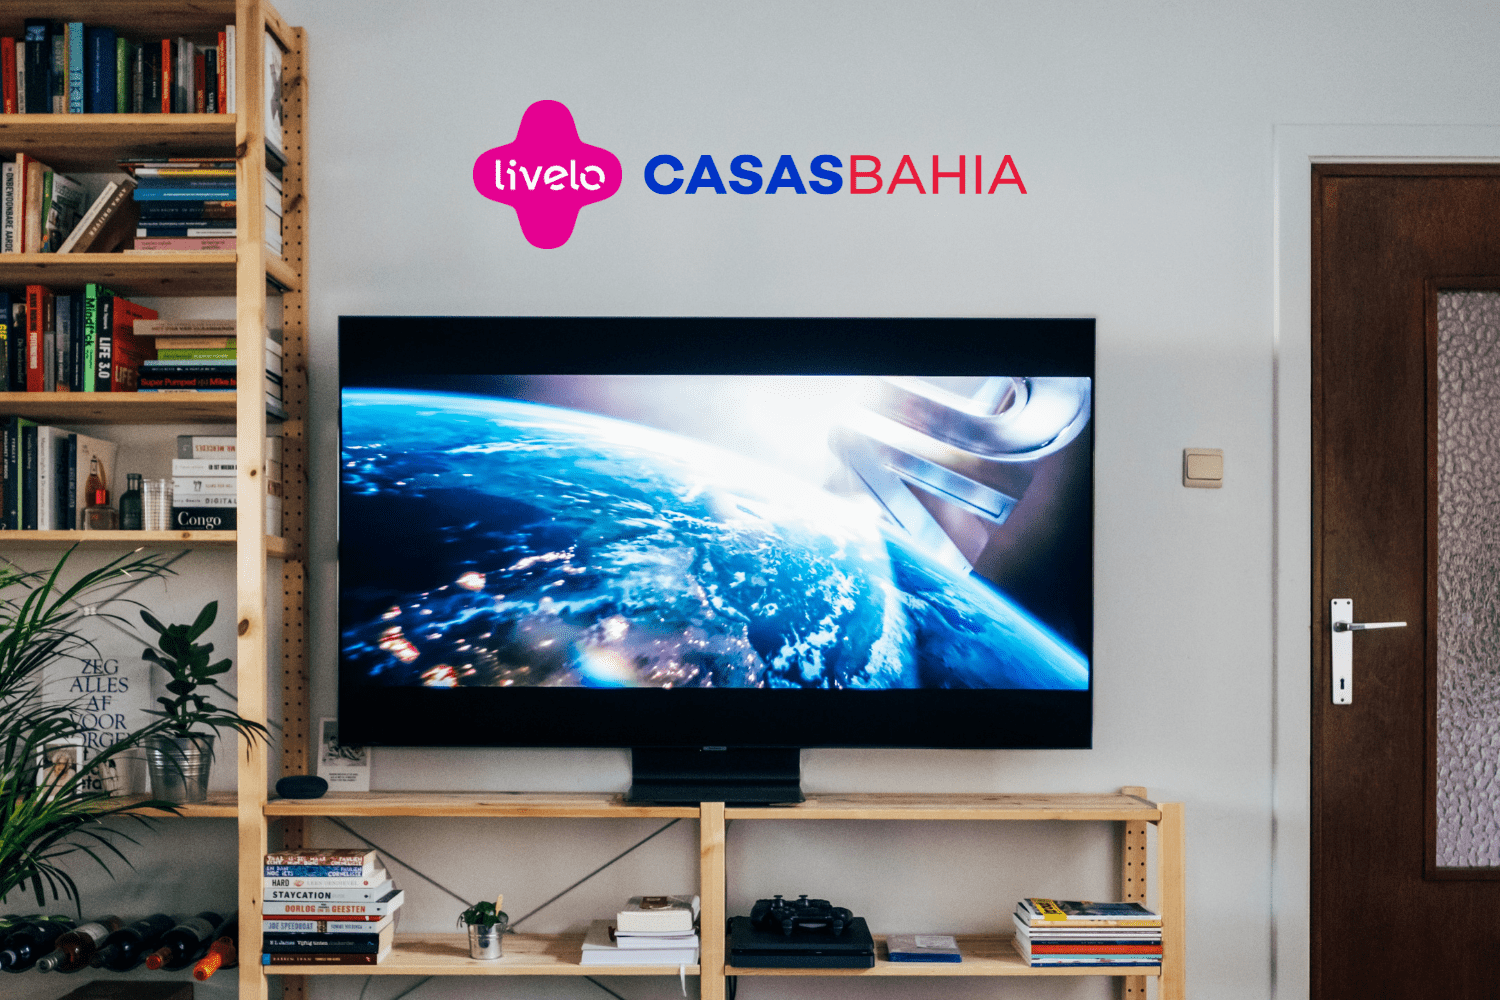 Smart Tv com logo Livelo e Casas Bahia 6 pontos Livelo